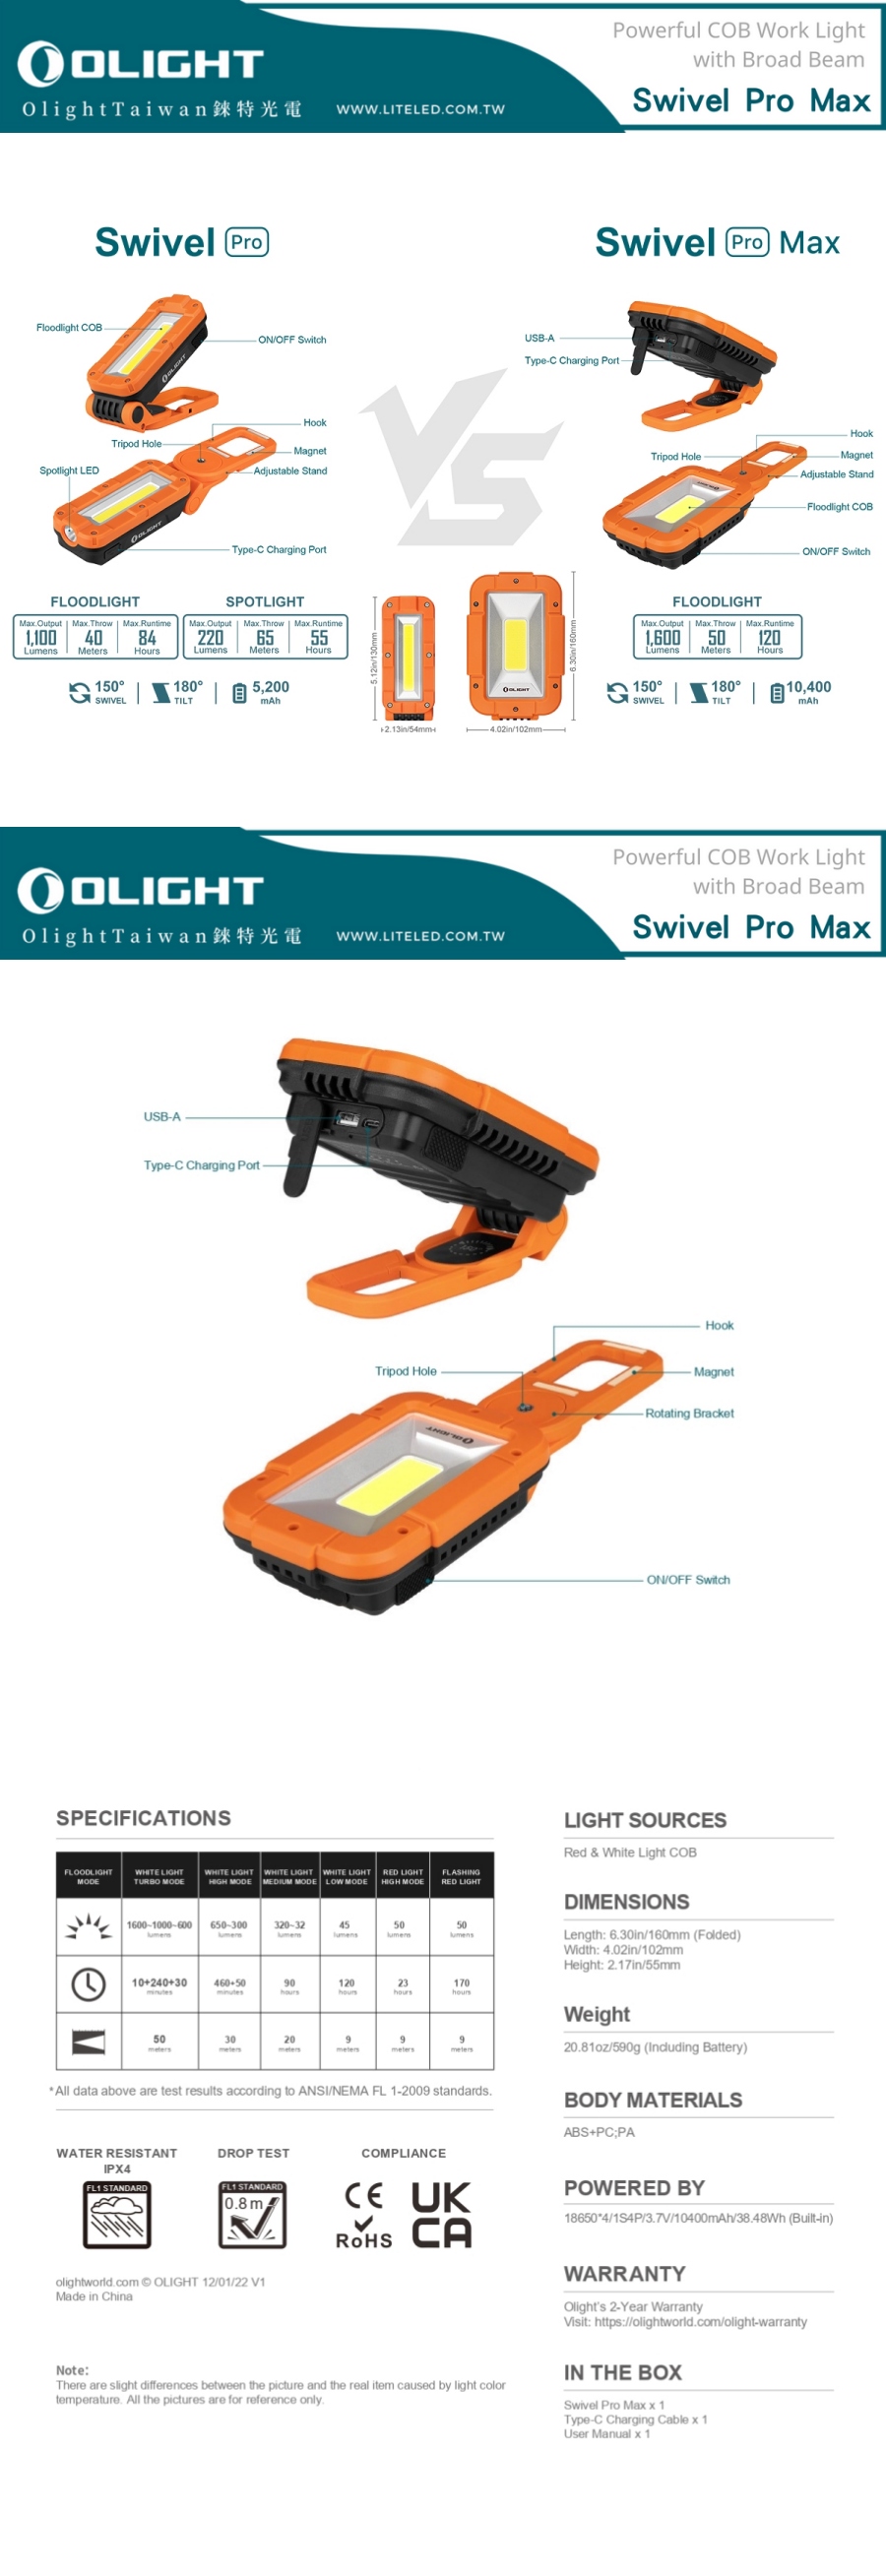 【錸特光電】OLIGHT SWIVEL PRO MAX 1600流明 COB工作燈 高顯色 USB-C充電 手電筒 防水 18W快充 Type-C l OLIGHT台灣總代理 台灣現貨 代理商 公司貨 原廠保固 COB Floodlight Work Light  (6)